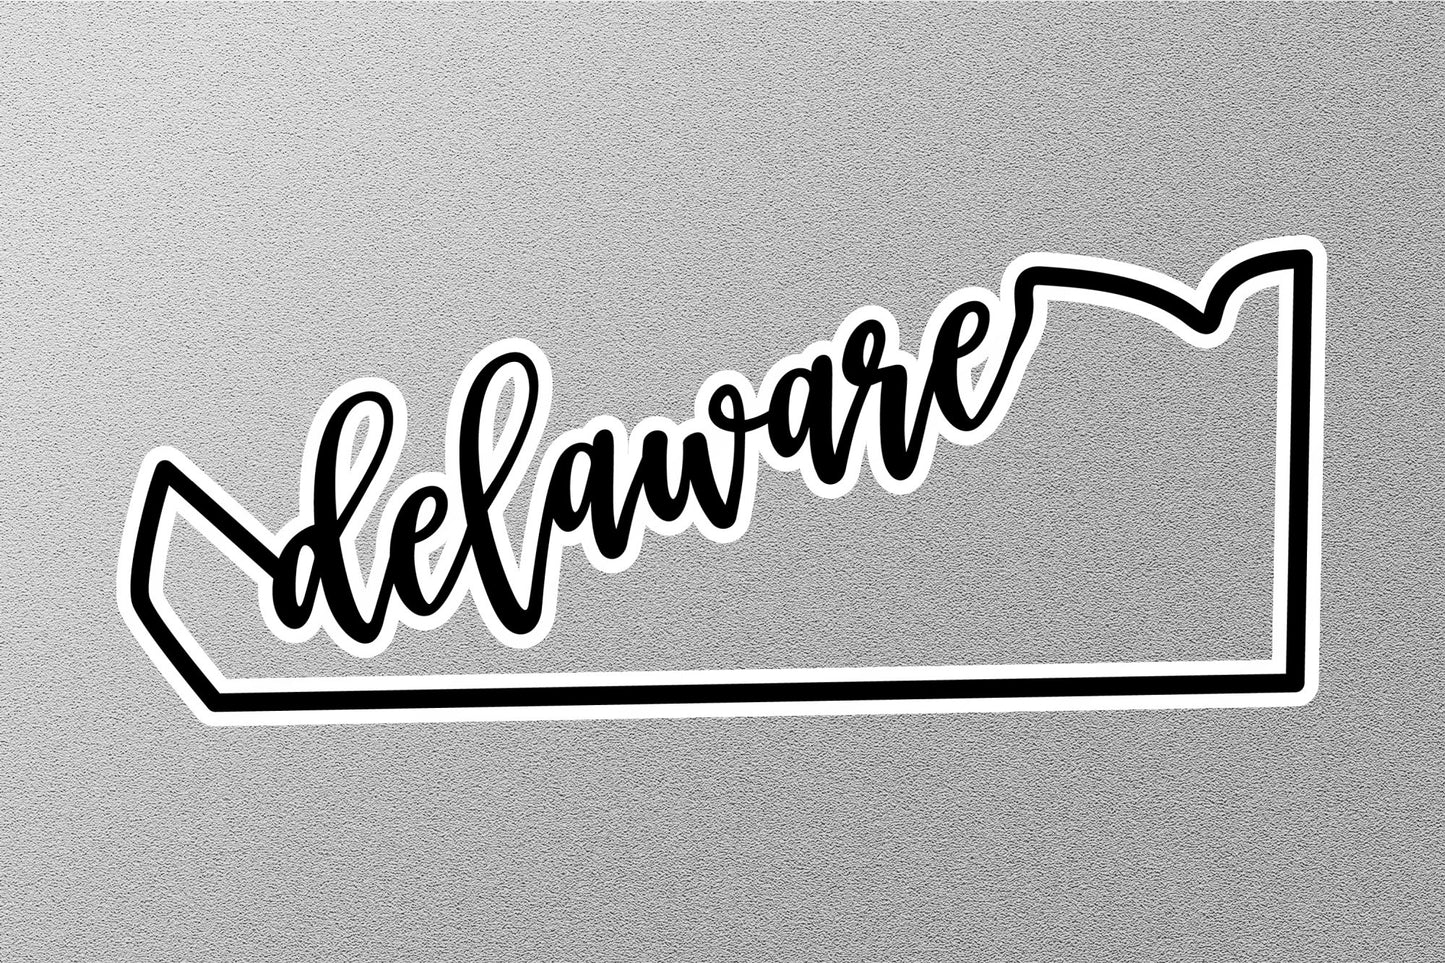 Delaware State Sticker